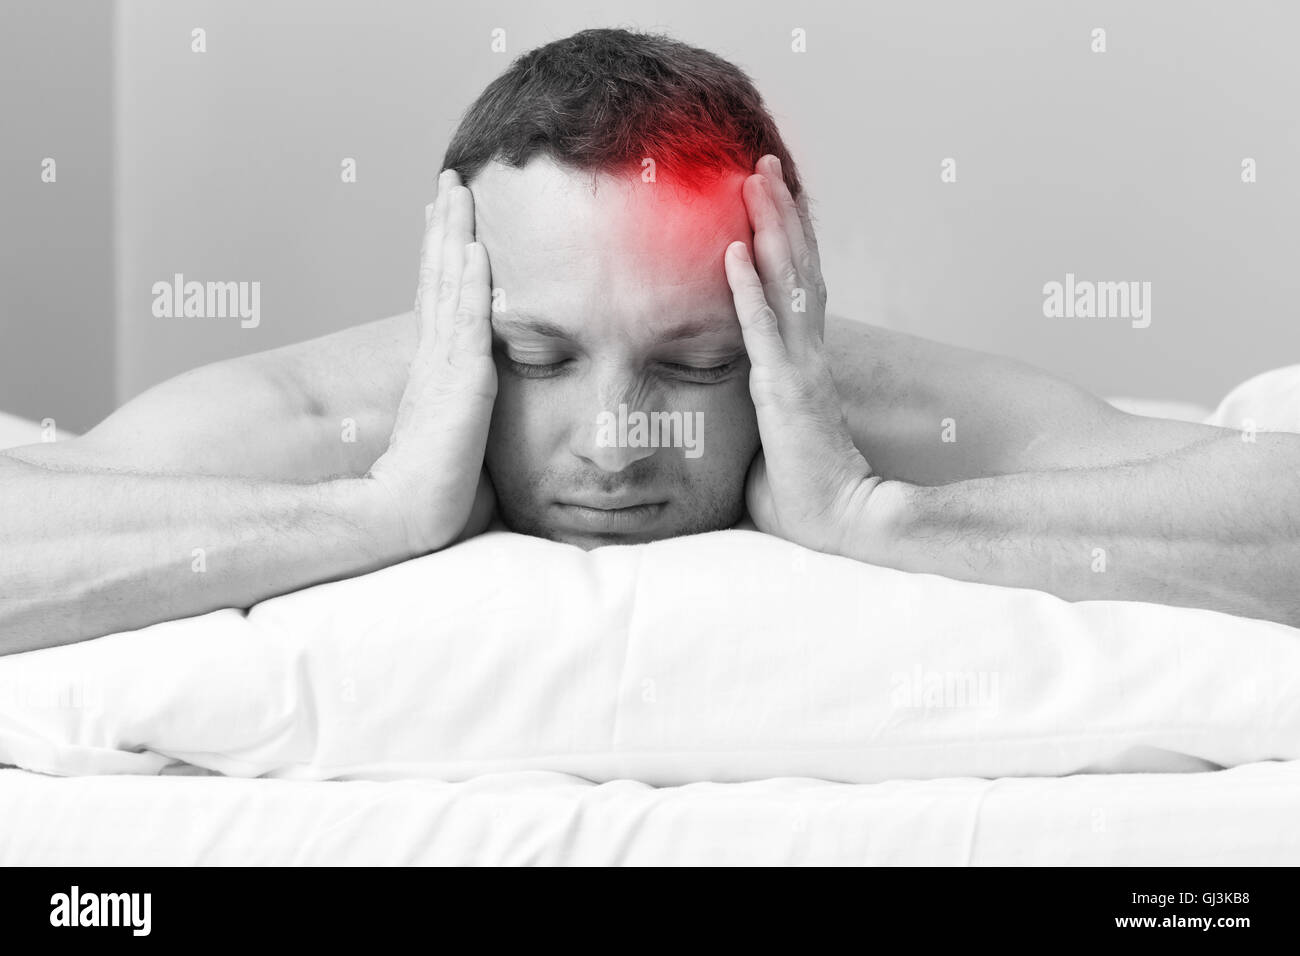 Porträt des jungen Mann im Bett mit Kopfschmerzen. Stilisierte Foto schwarz / weiß mit roten lokalen Schmerzen vor Ort Stockfoto